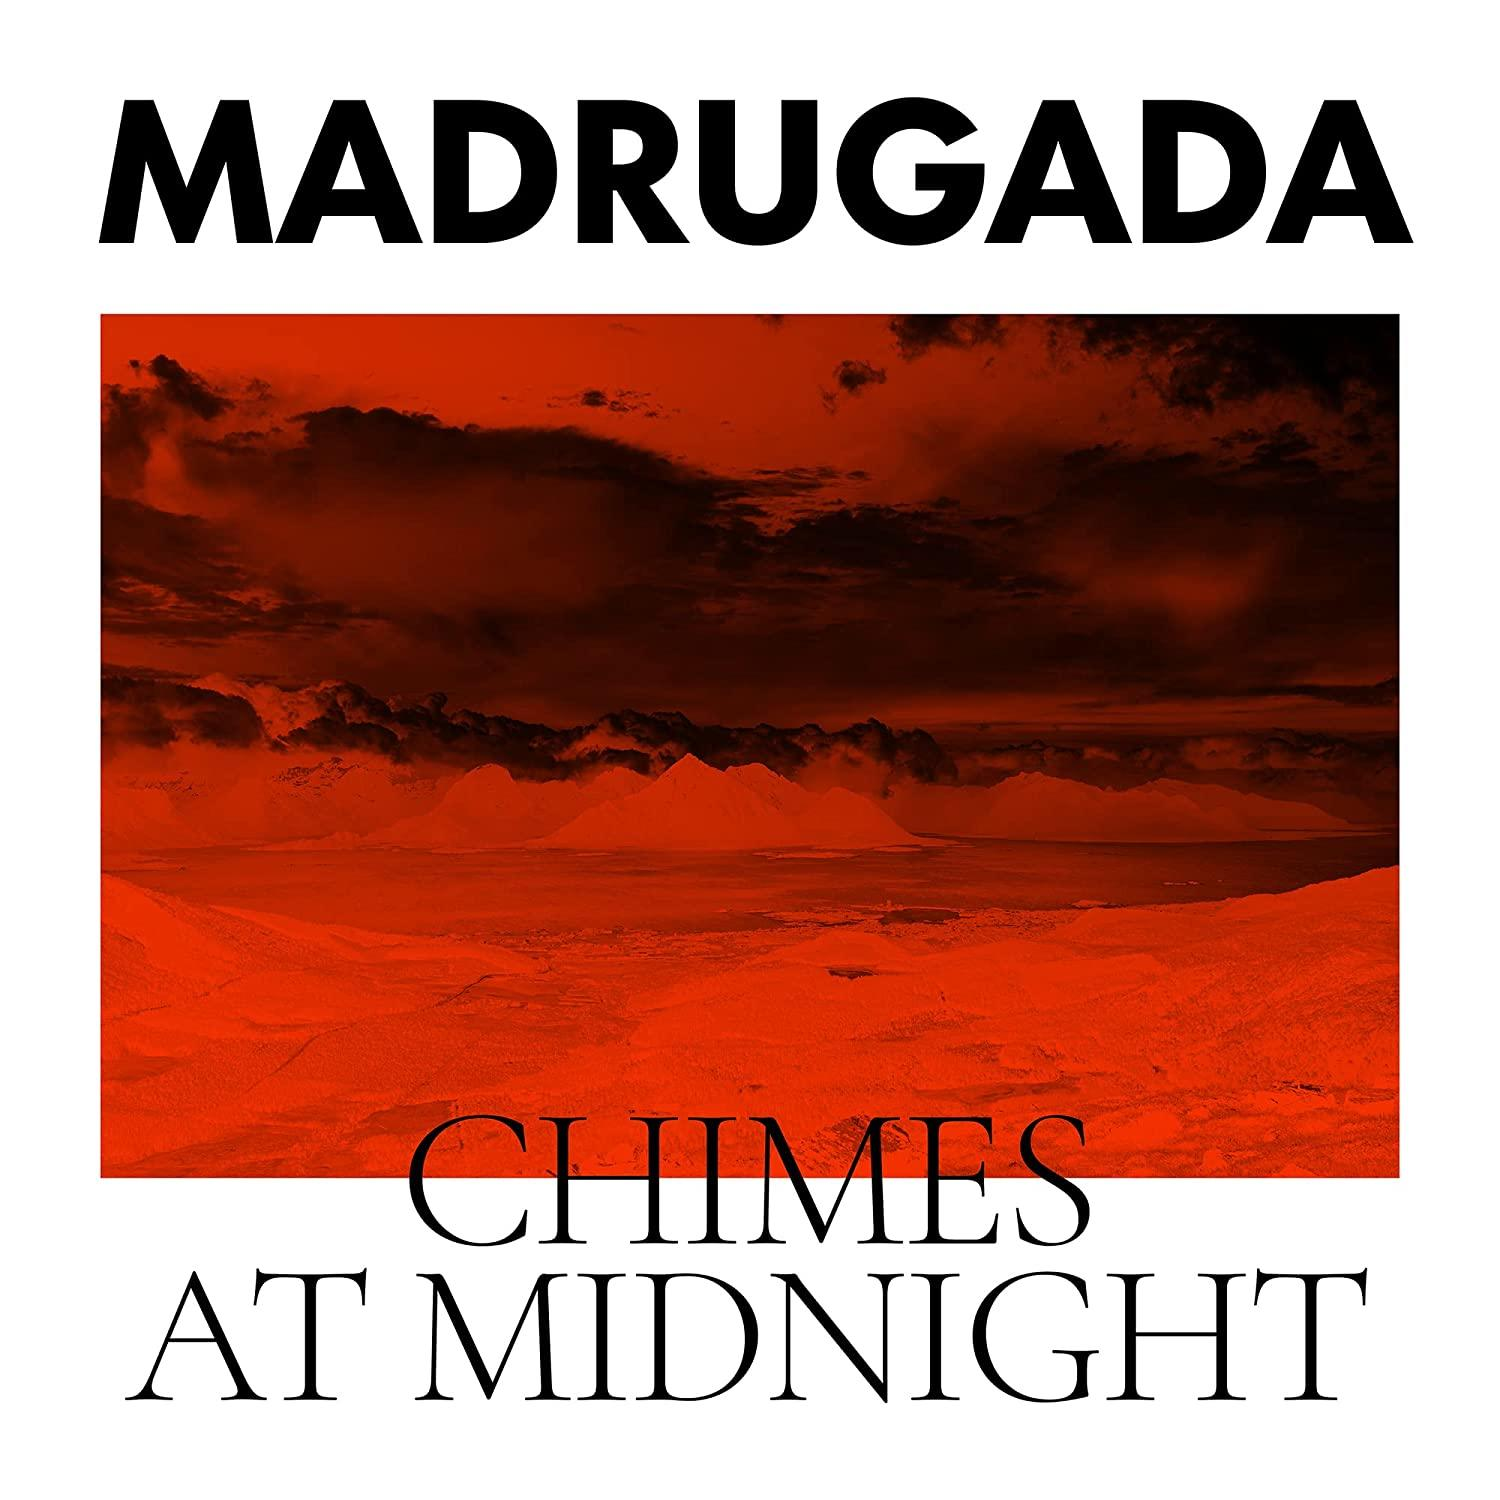 Midnight - - At Chimes (Vinyl) Madrugada